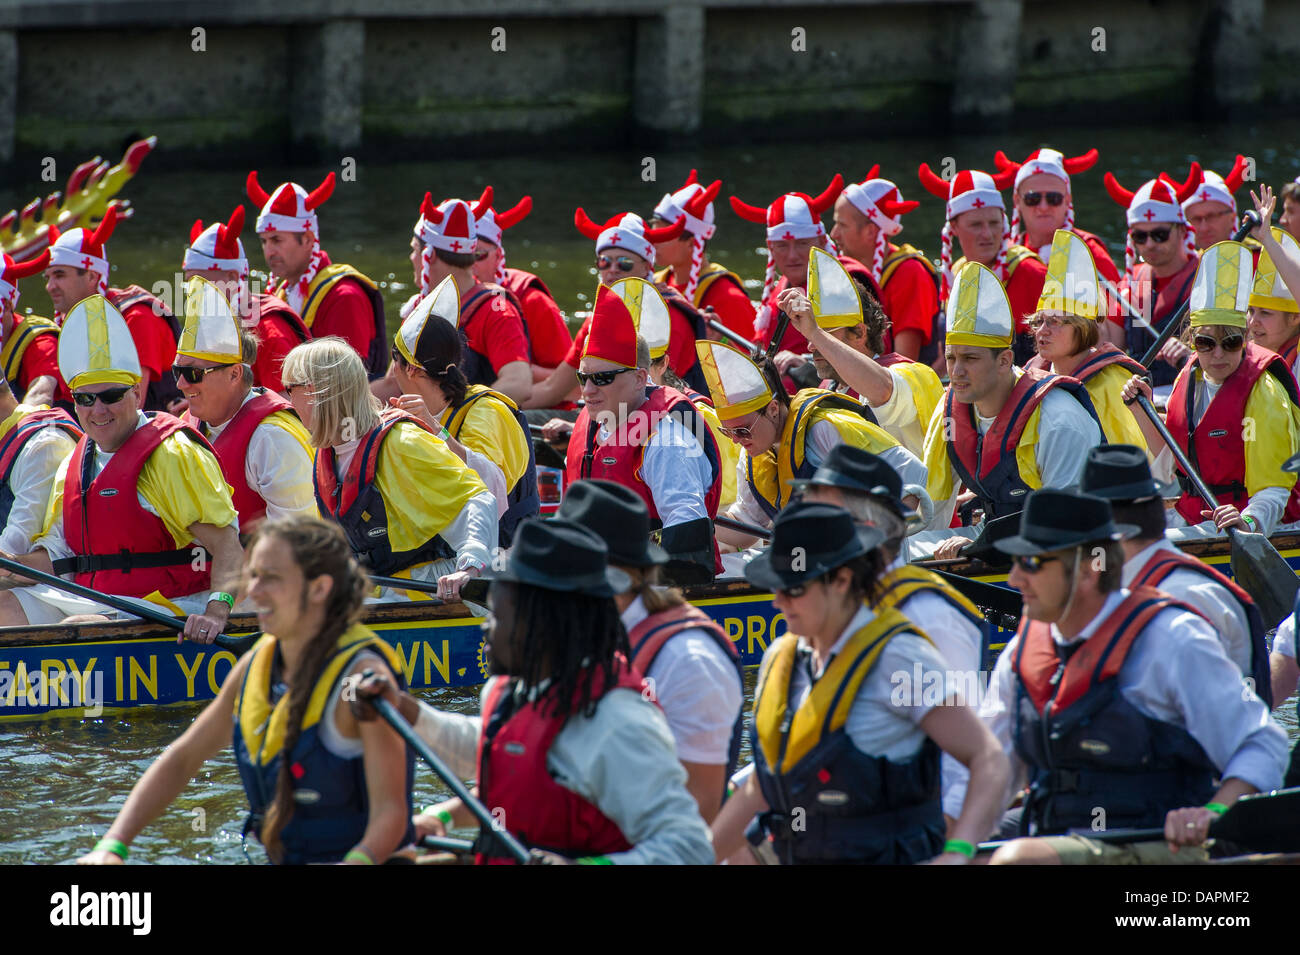 El 2013 "Ayuda para los héroes caridad Dragon Boat Race Fancy Dress evento benéfico organizado por el Rotary Club en York. Foto de stock